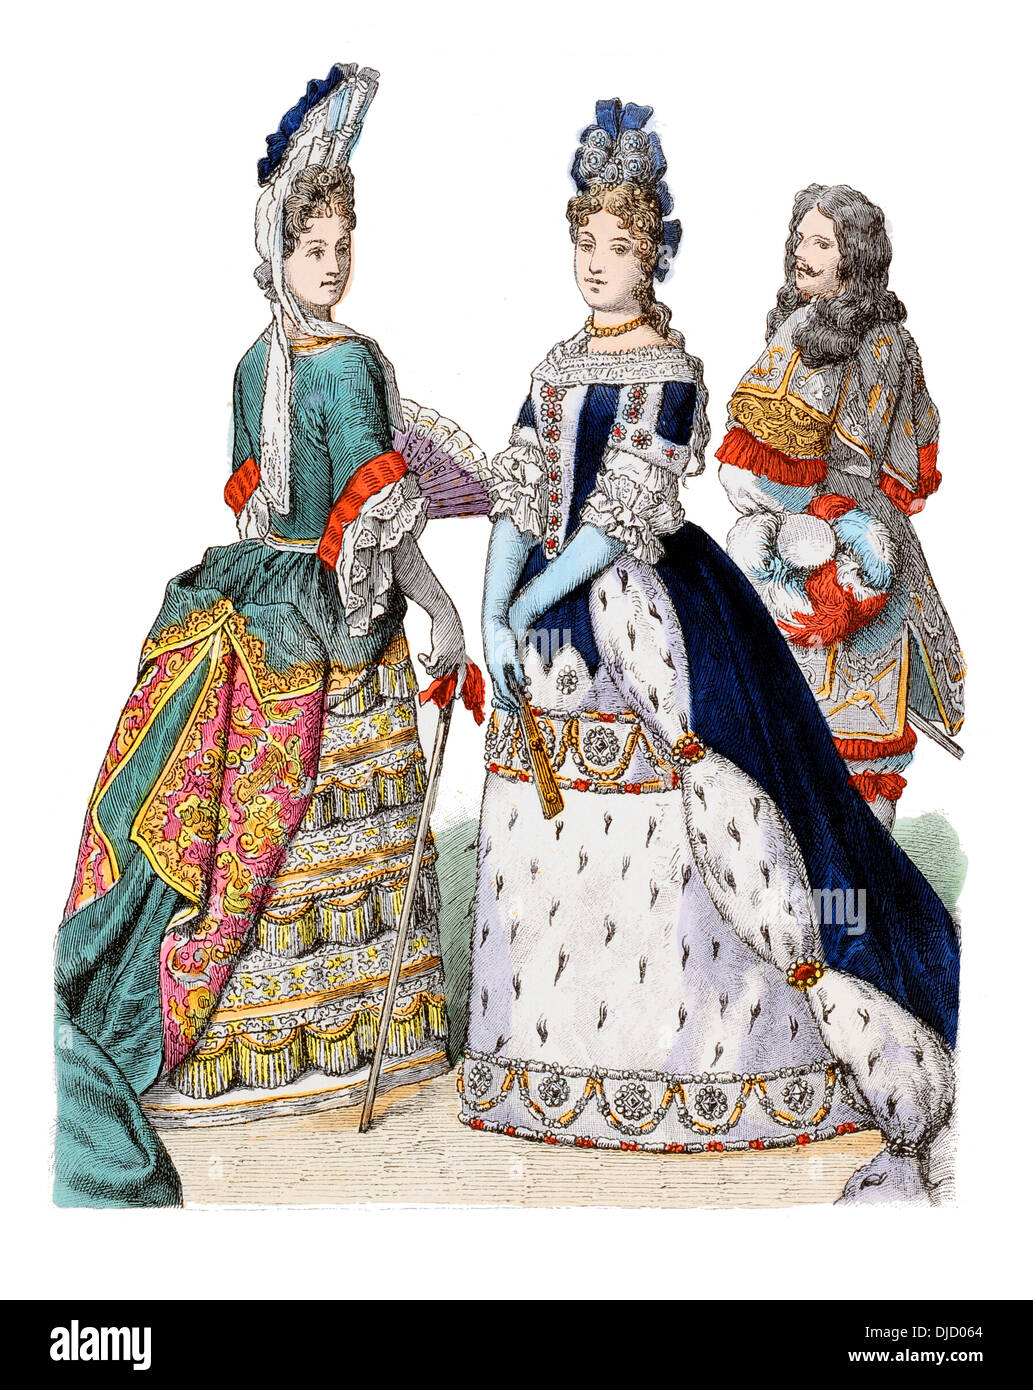 Finales del siglo XVII XVII de 1600 (de izquierda a derecha) English Duquesa de Portsmouth, Baviera Maria Anna y un guardia del Palacio Bávaro Foto de stock